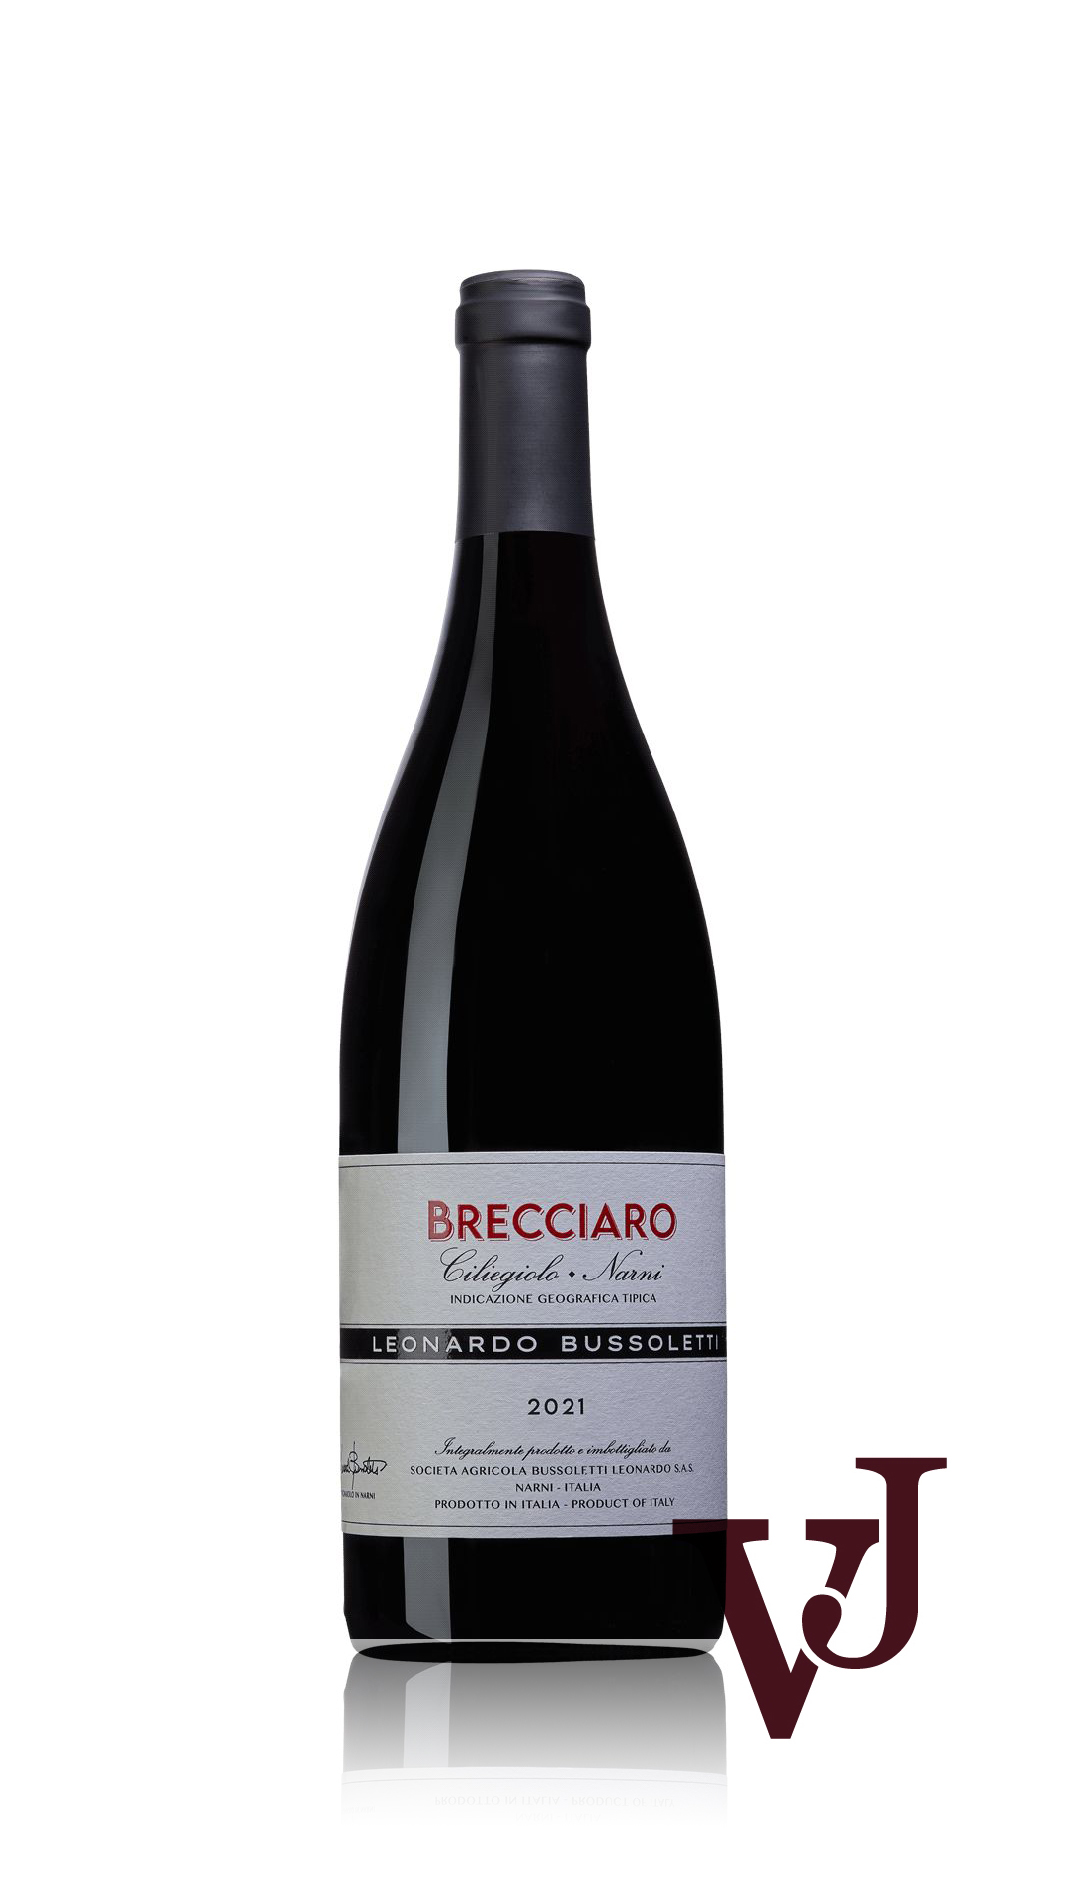 Rött vin - Brecciaro Leonardo Bussoletti 2021 artikel nummer 9228901 från producenten società agricola Leonardo Bussoletti från Italien